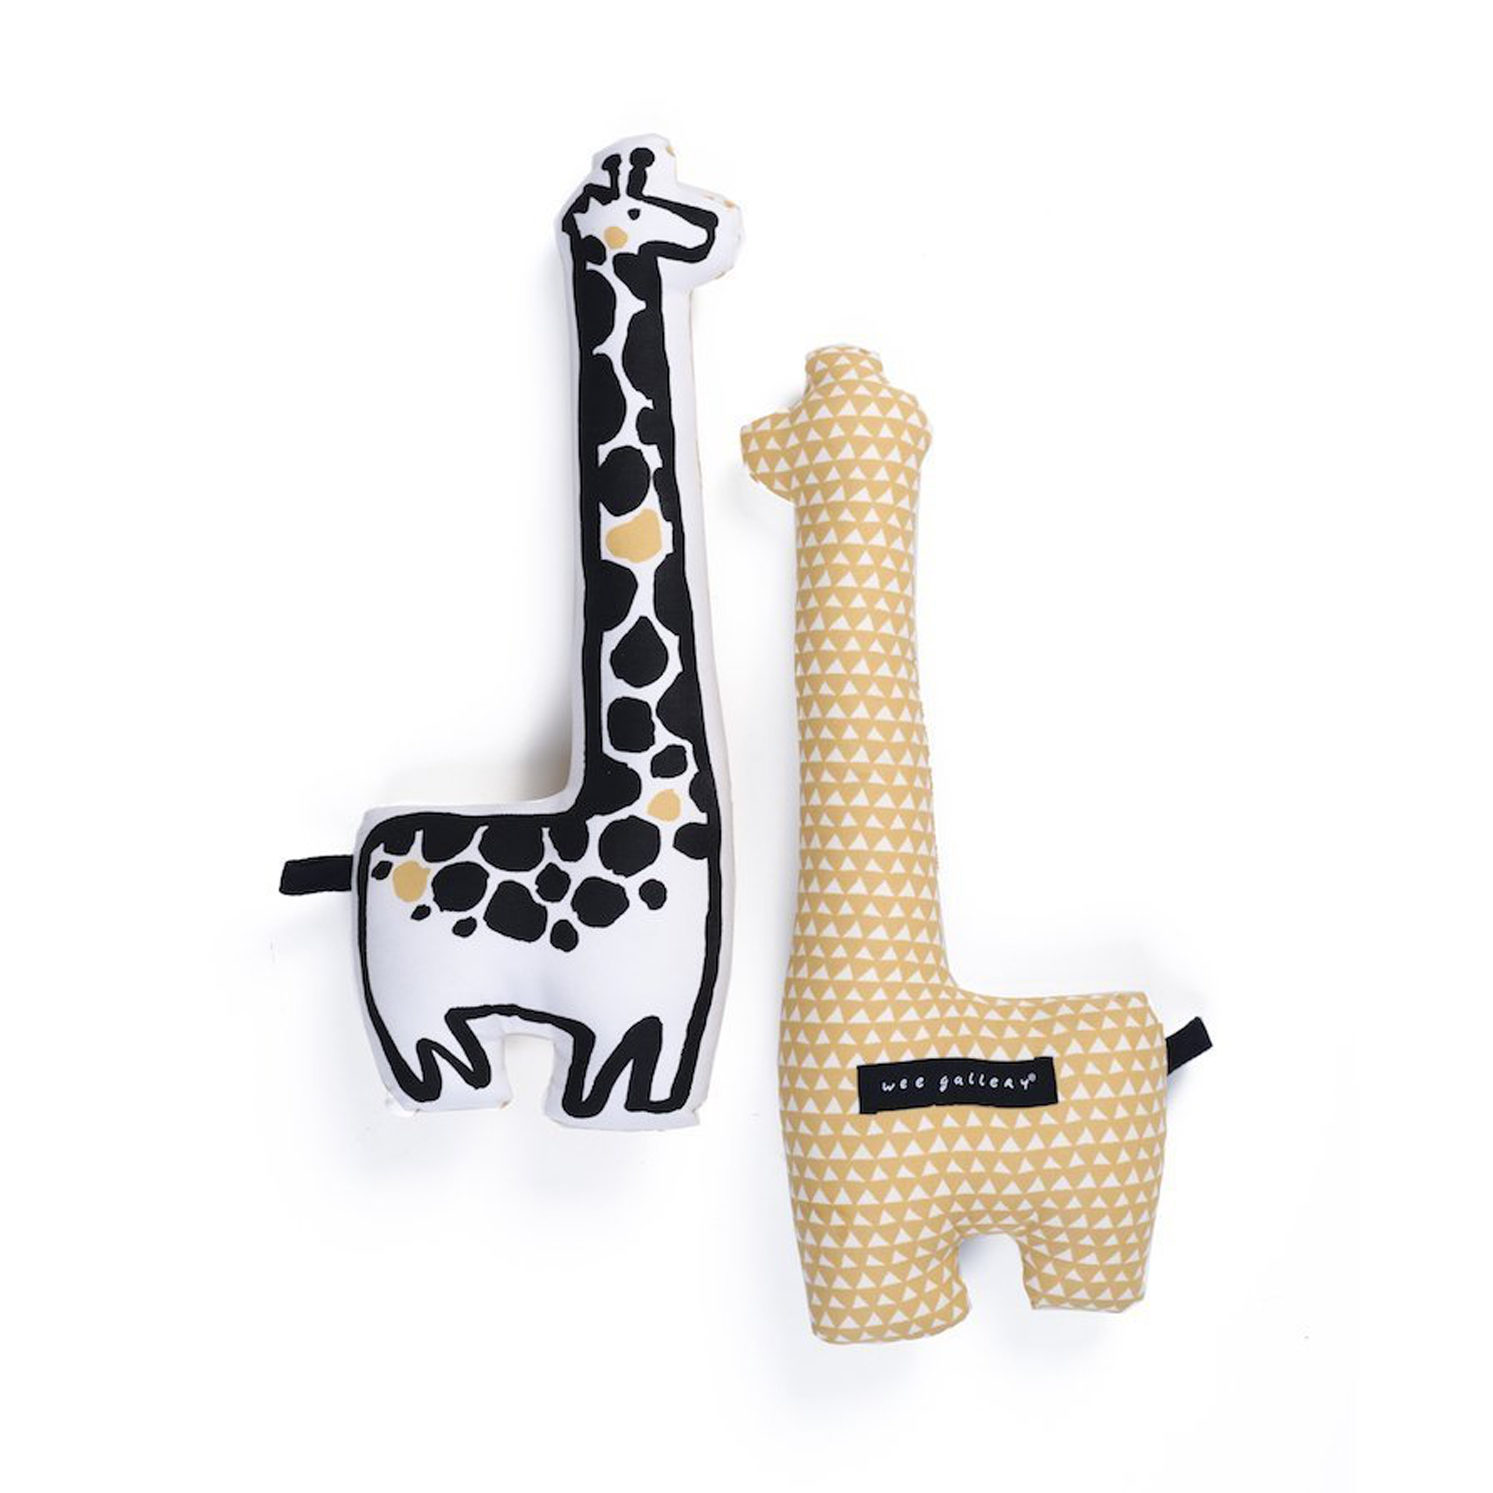 Doudou girafe en coton bio de Wee Gallery